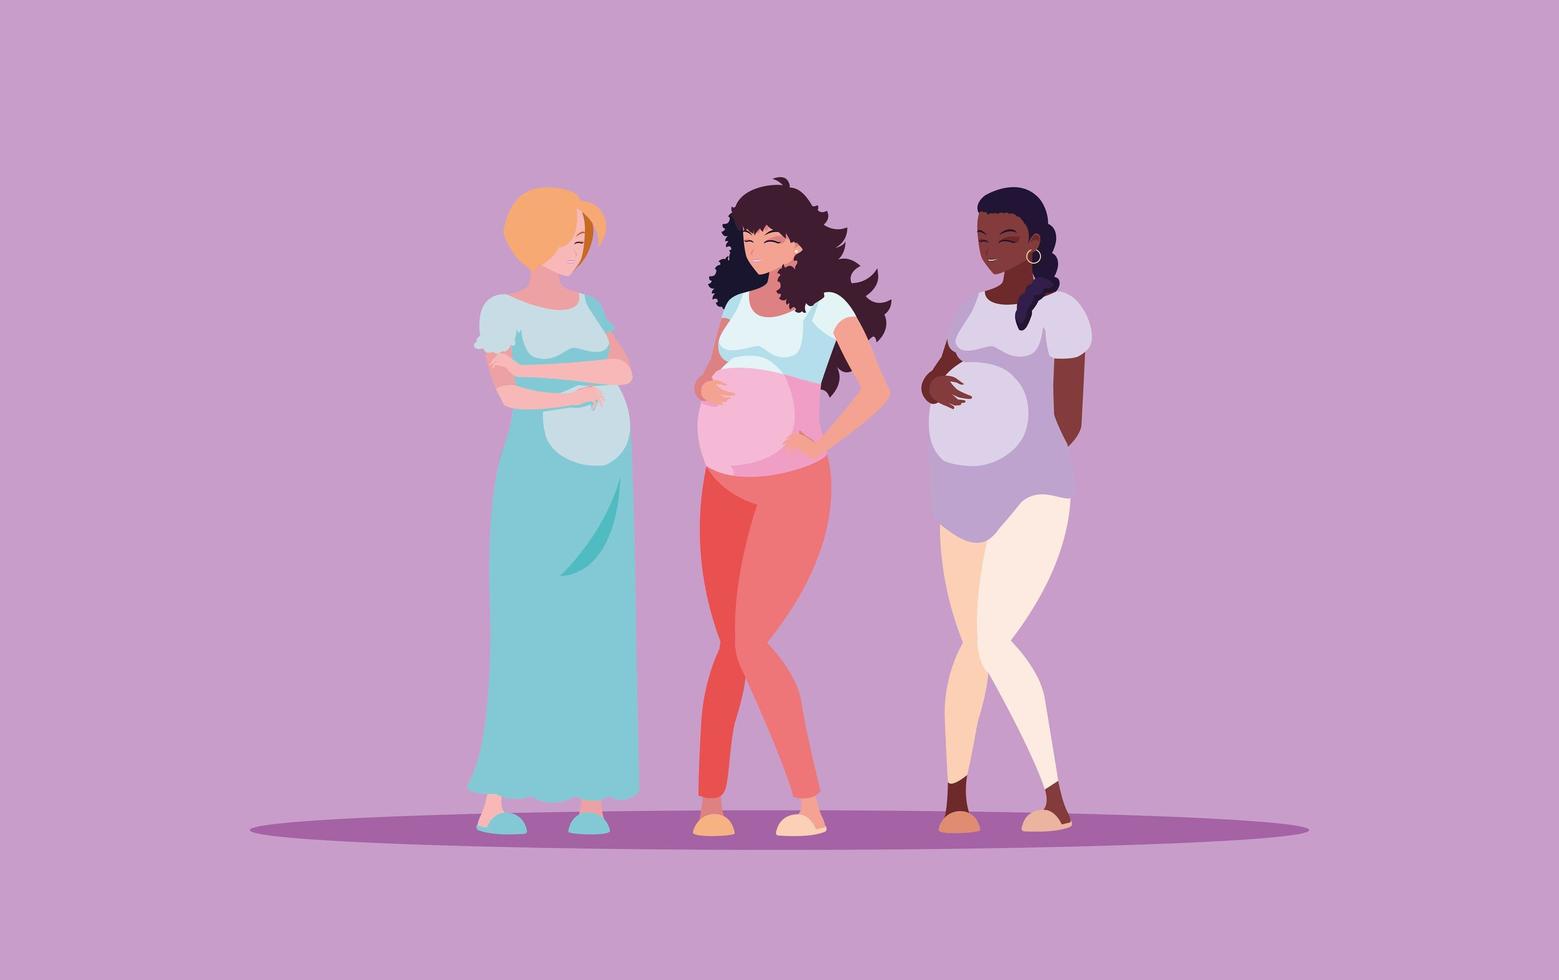 zwangere groep vrouwen avatar karakter vector